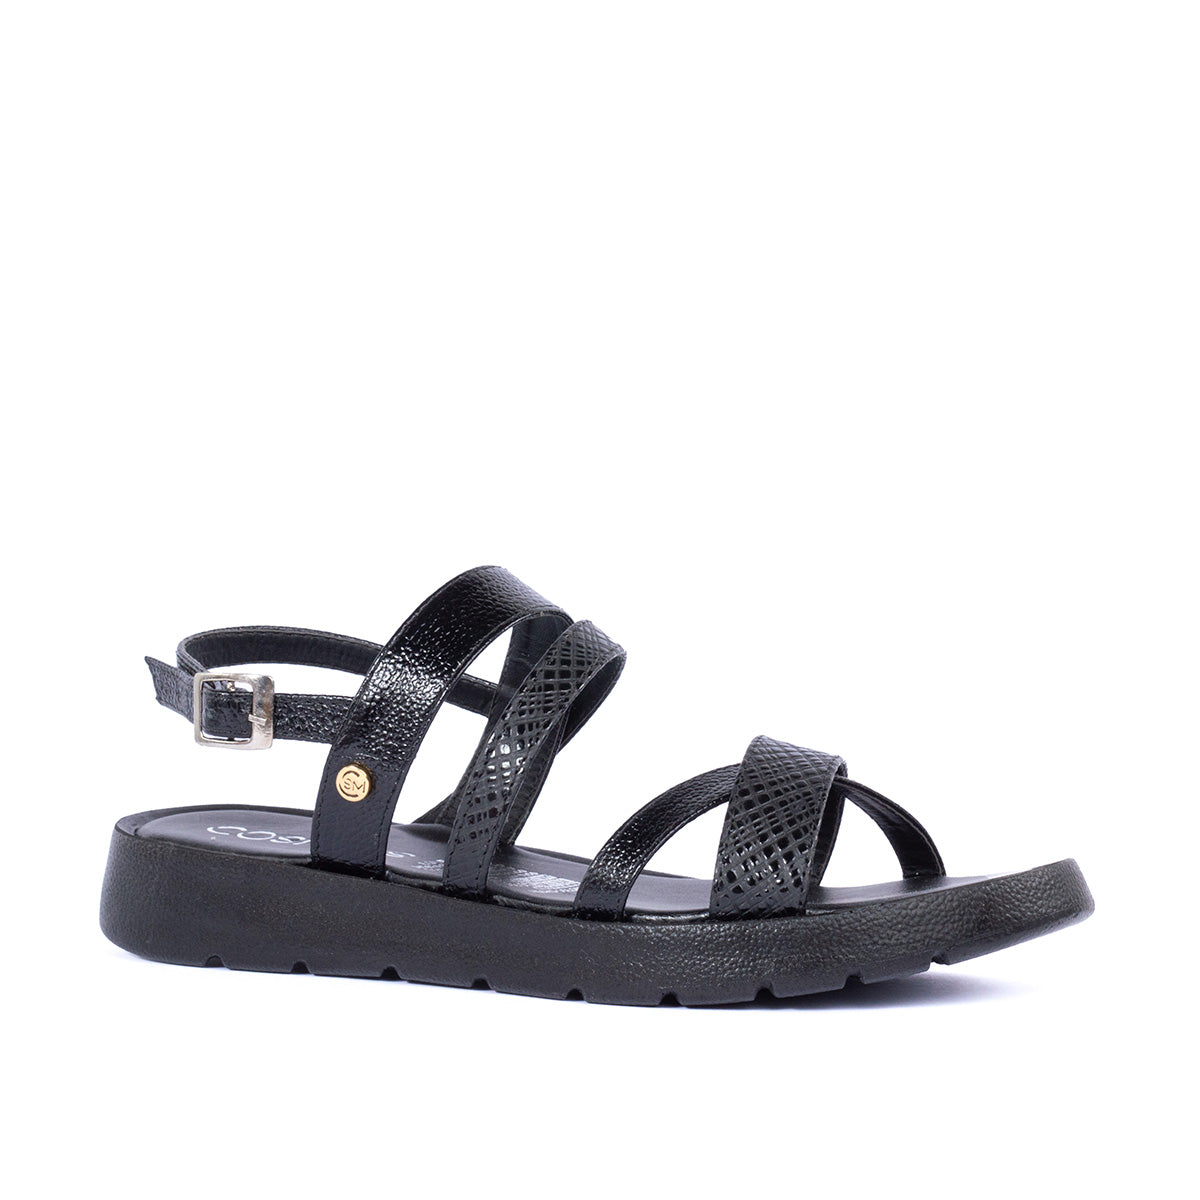 Sandalias planas color negro con acabado tipo pitón y con correas